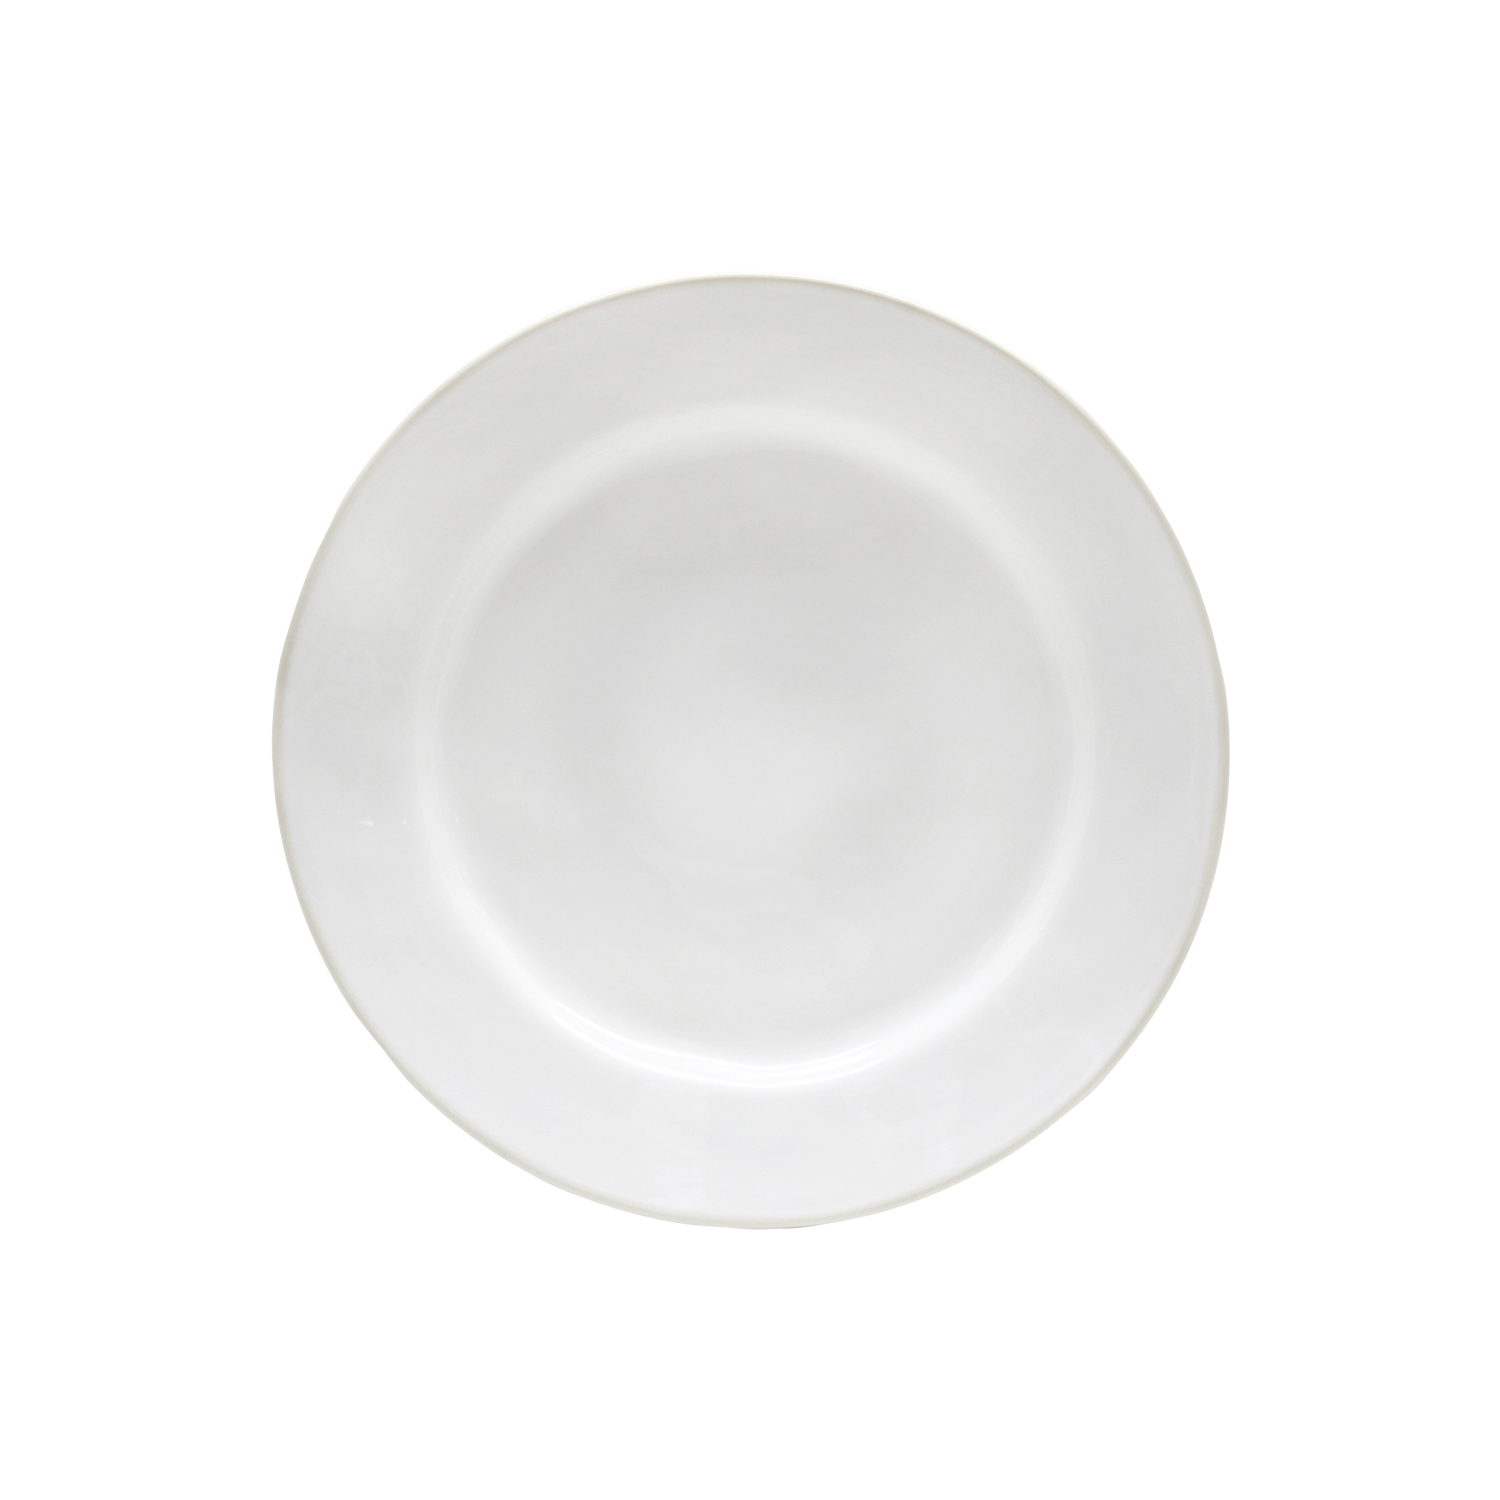 Beja White/cream Dinner Plate 28cm Gift